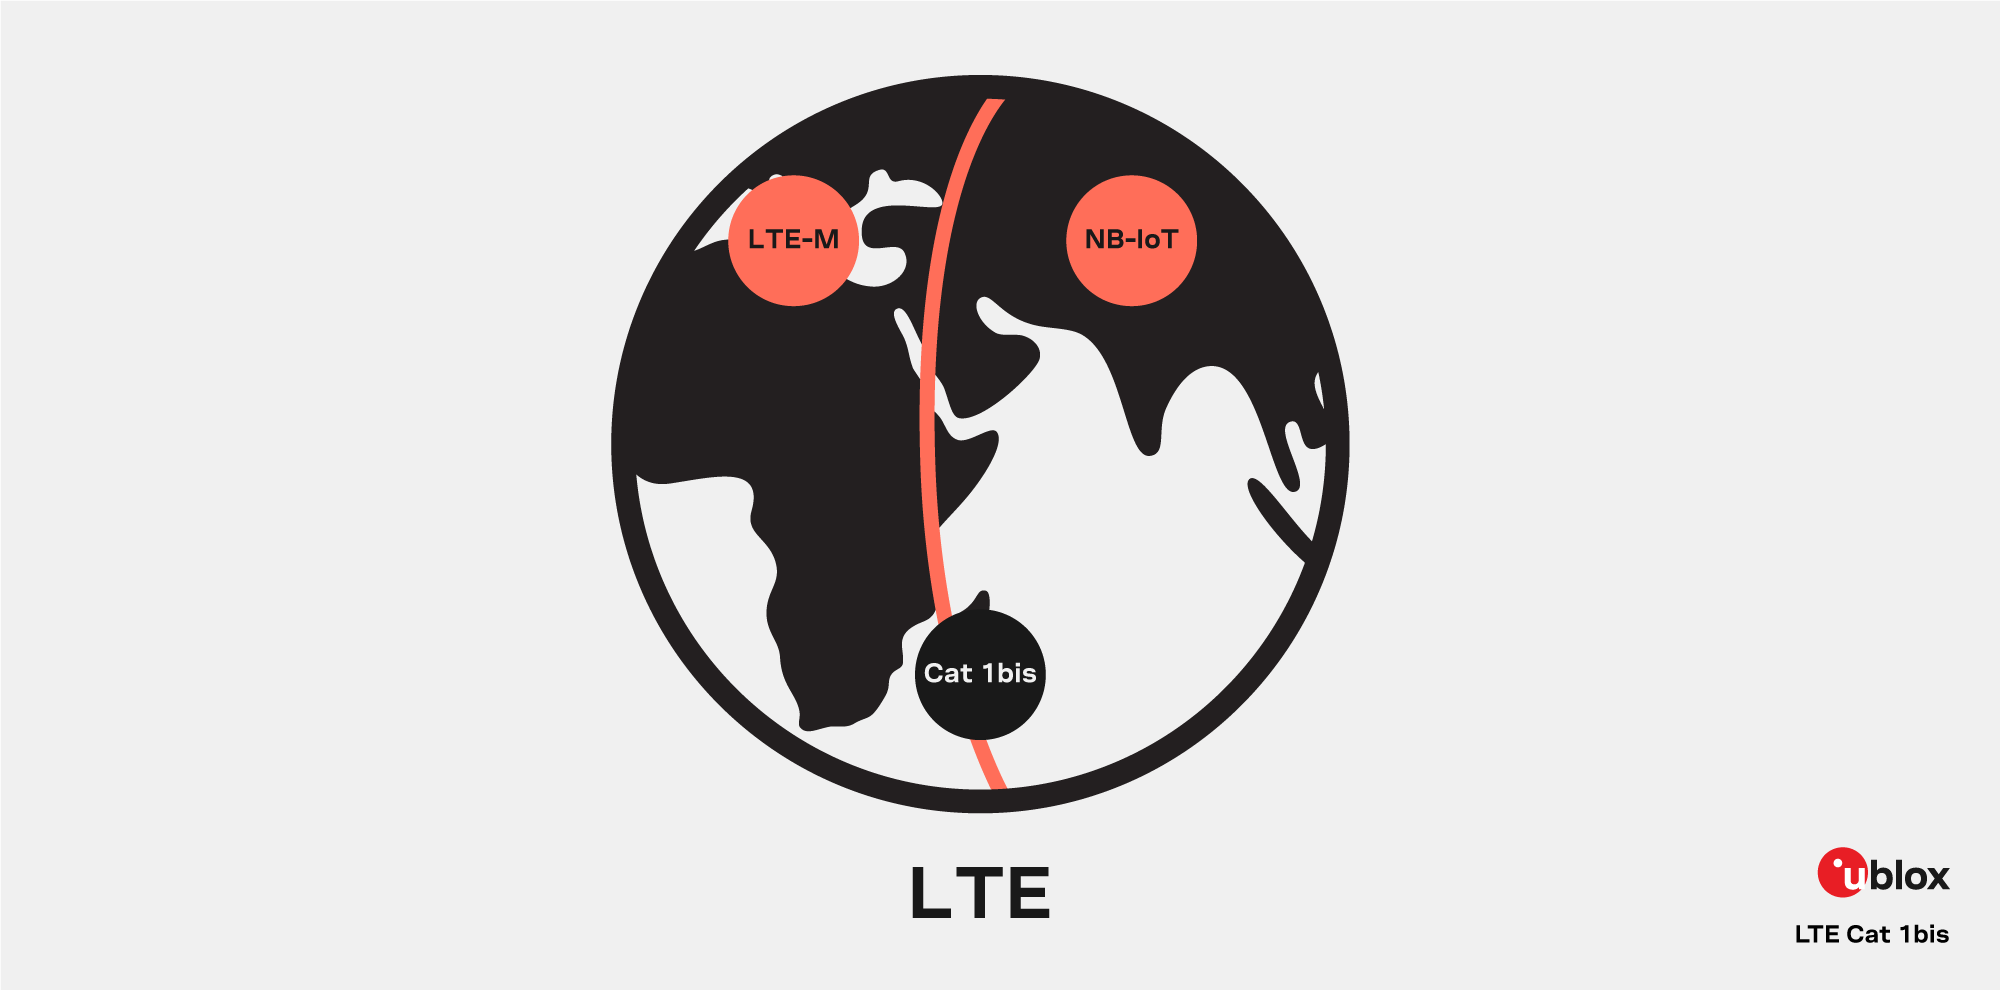 LTE cat 1bis 4G world specification